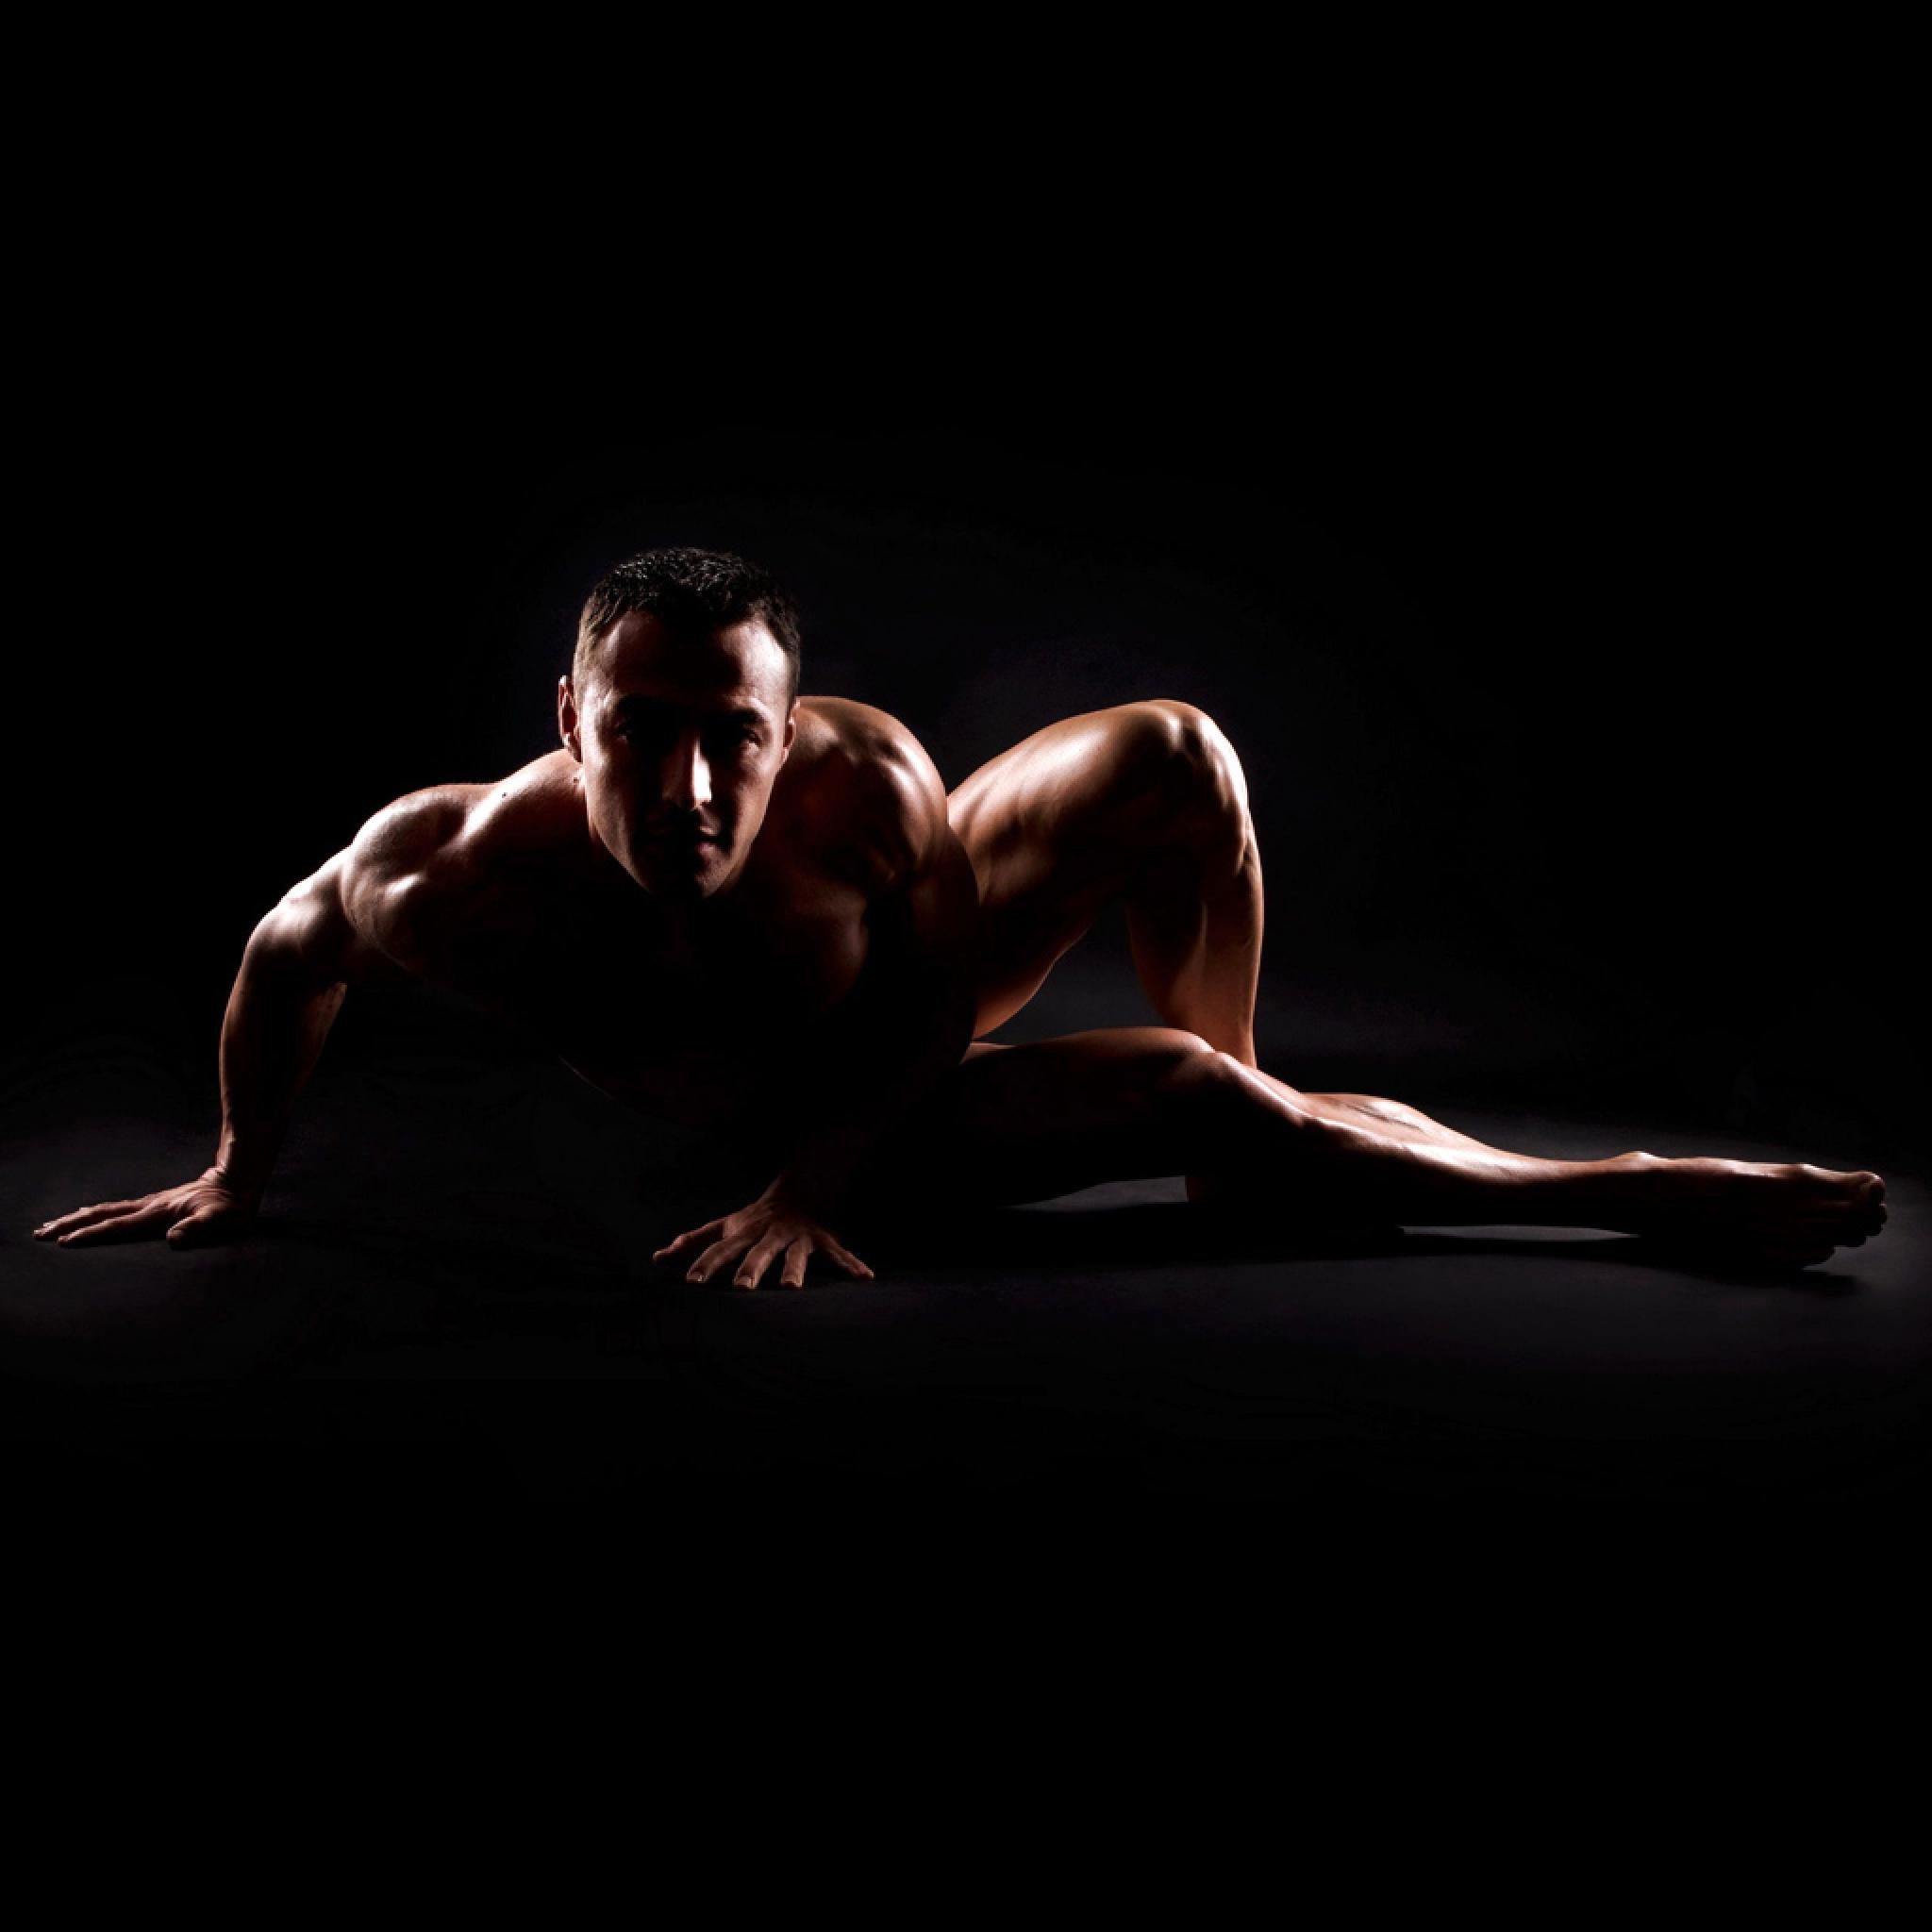 Bodybuilder Fitness Figure Posing iPad iPhone HD Wallpaper